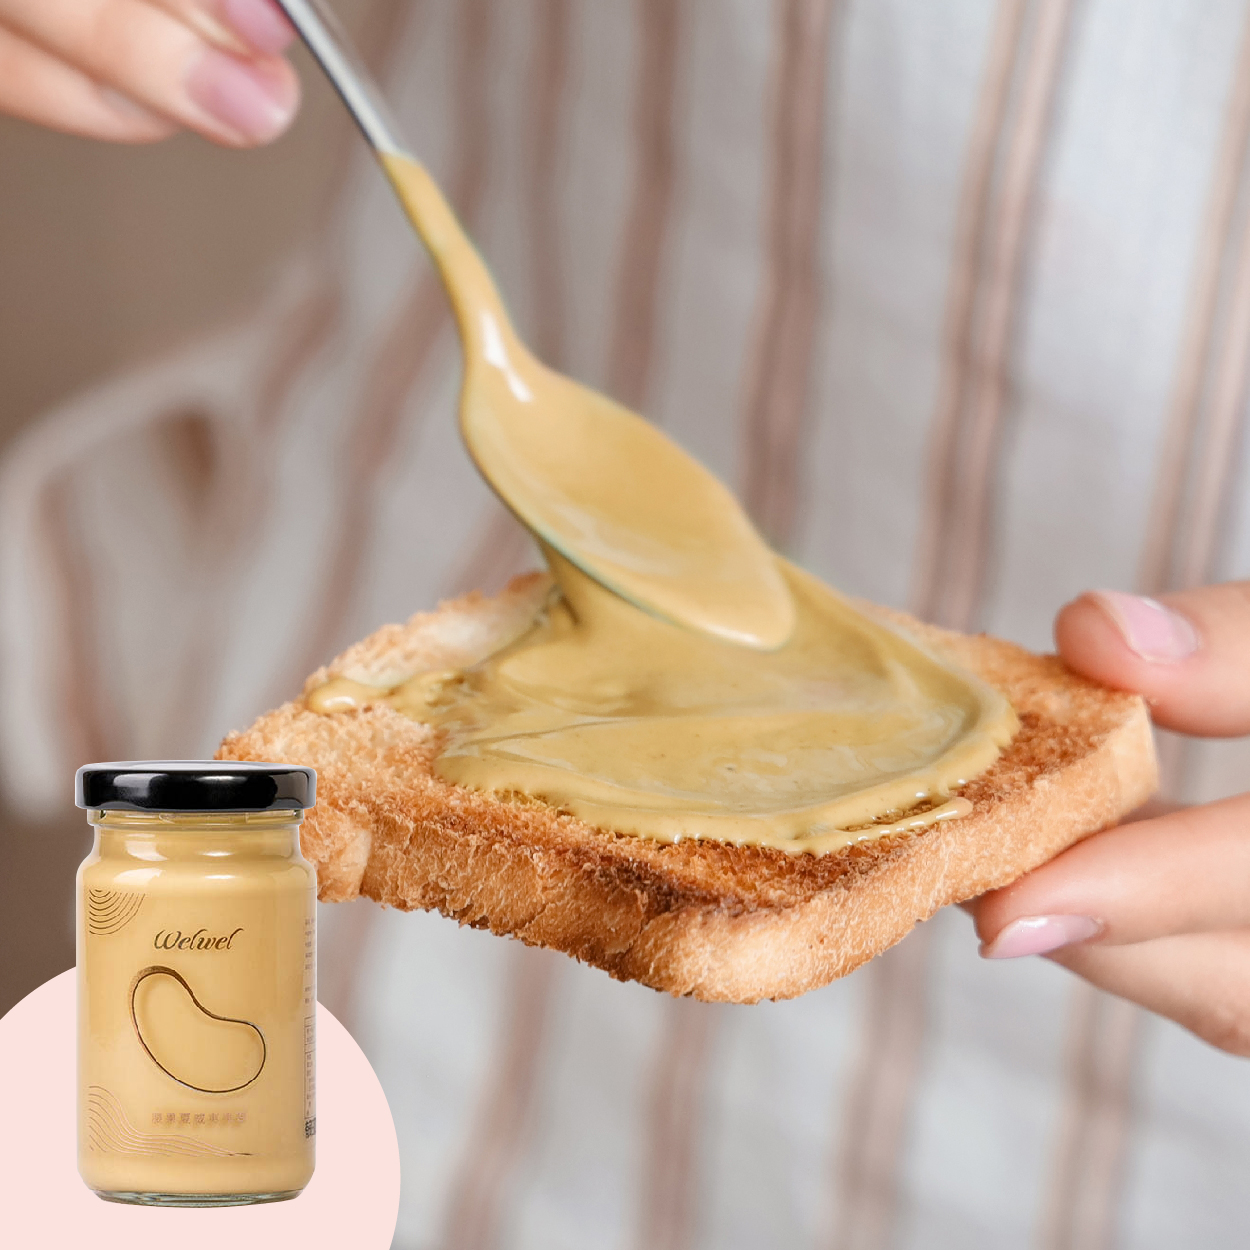 Welwel微兒微兒經典綜合堅果醬  採用黃金比例調製而成 一罐難求限量夢幻堅果醬